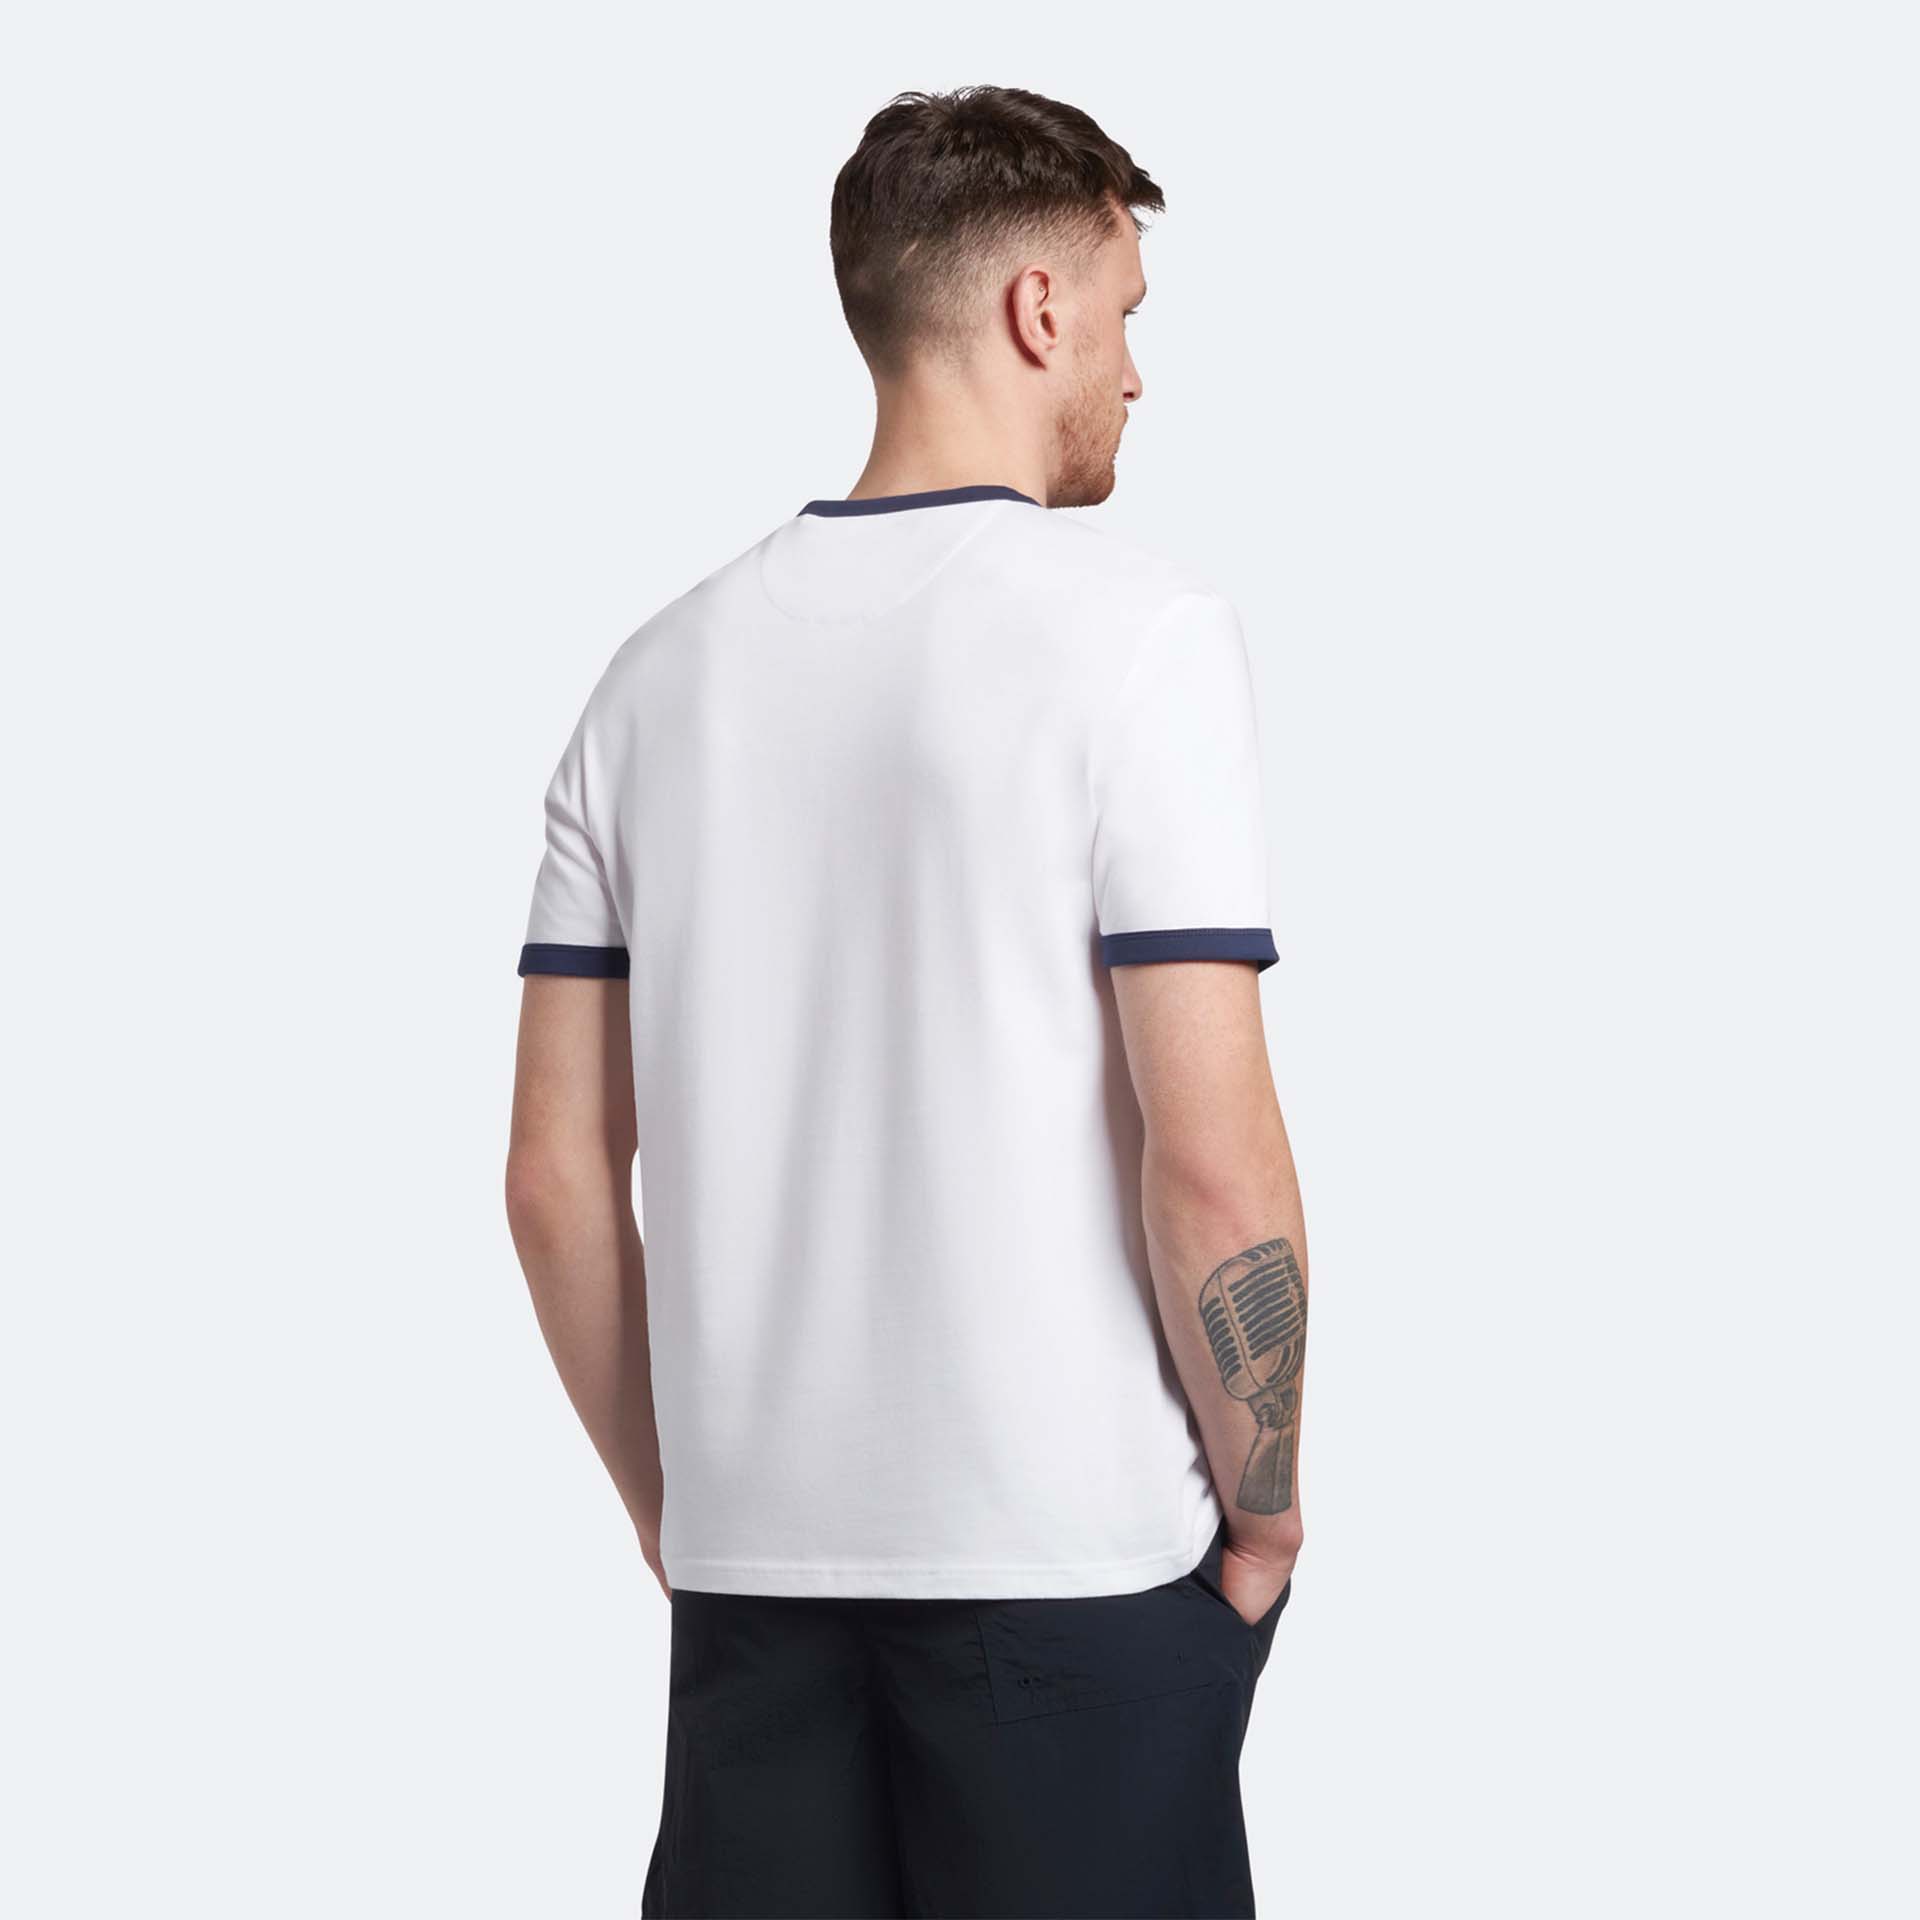 Lyle & Scott Ringer T-Shirt White/Navy